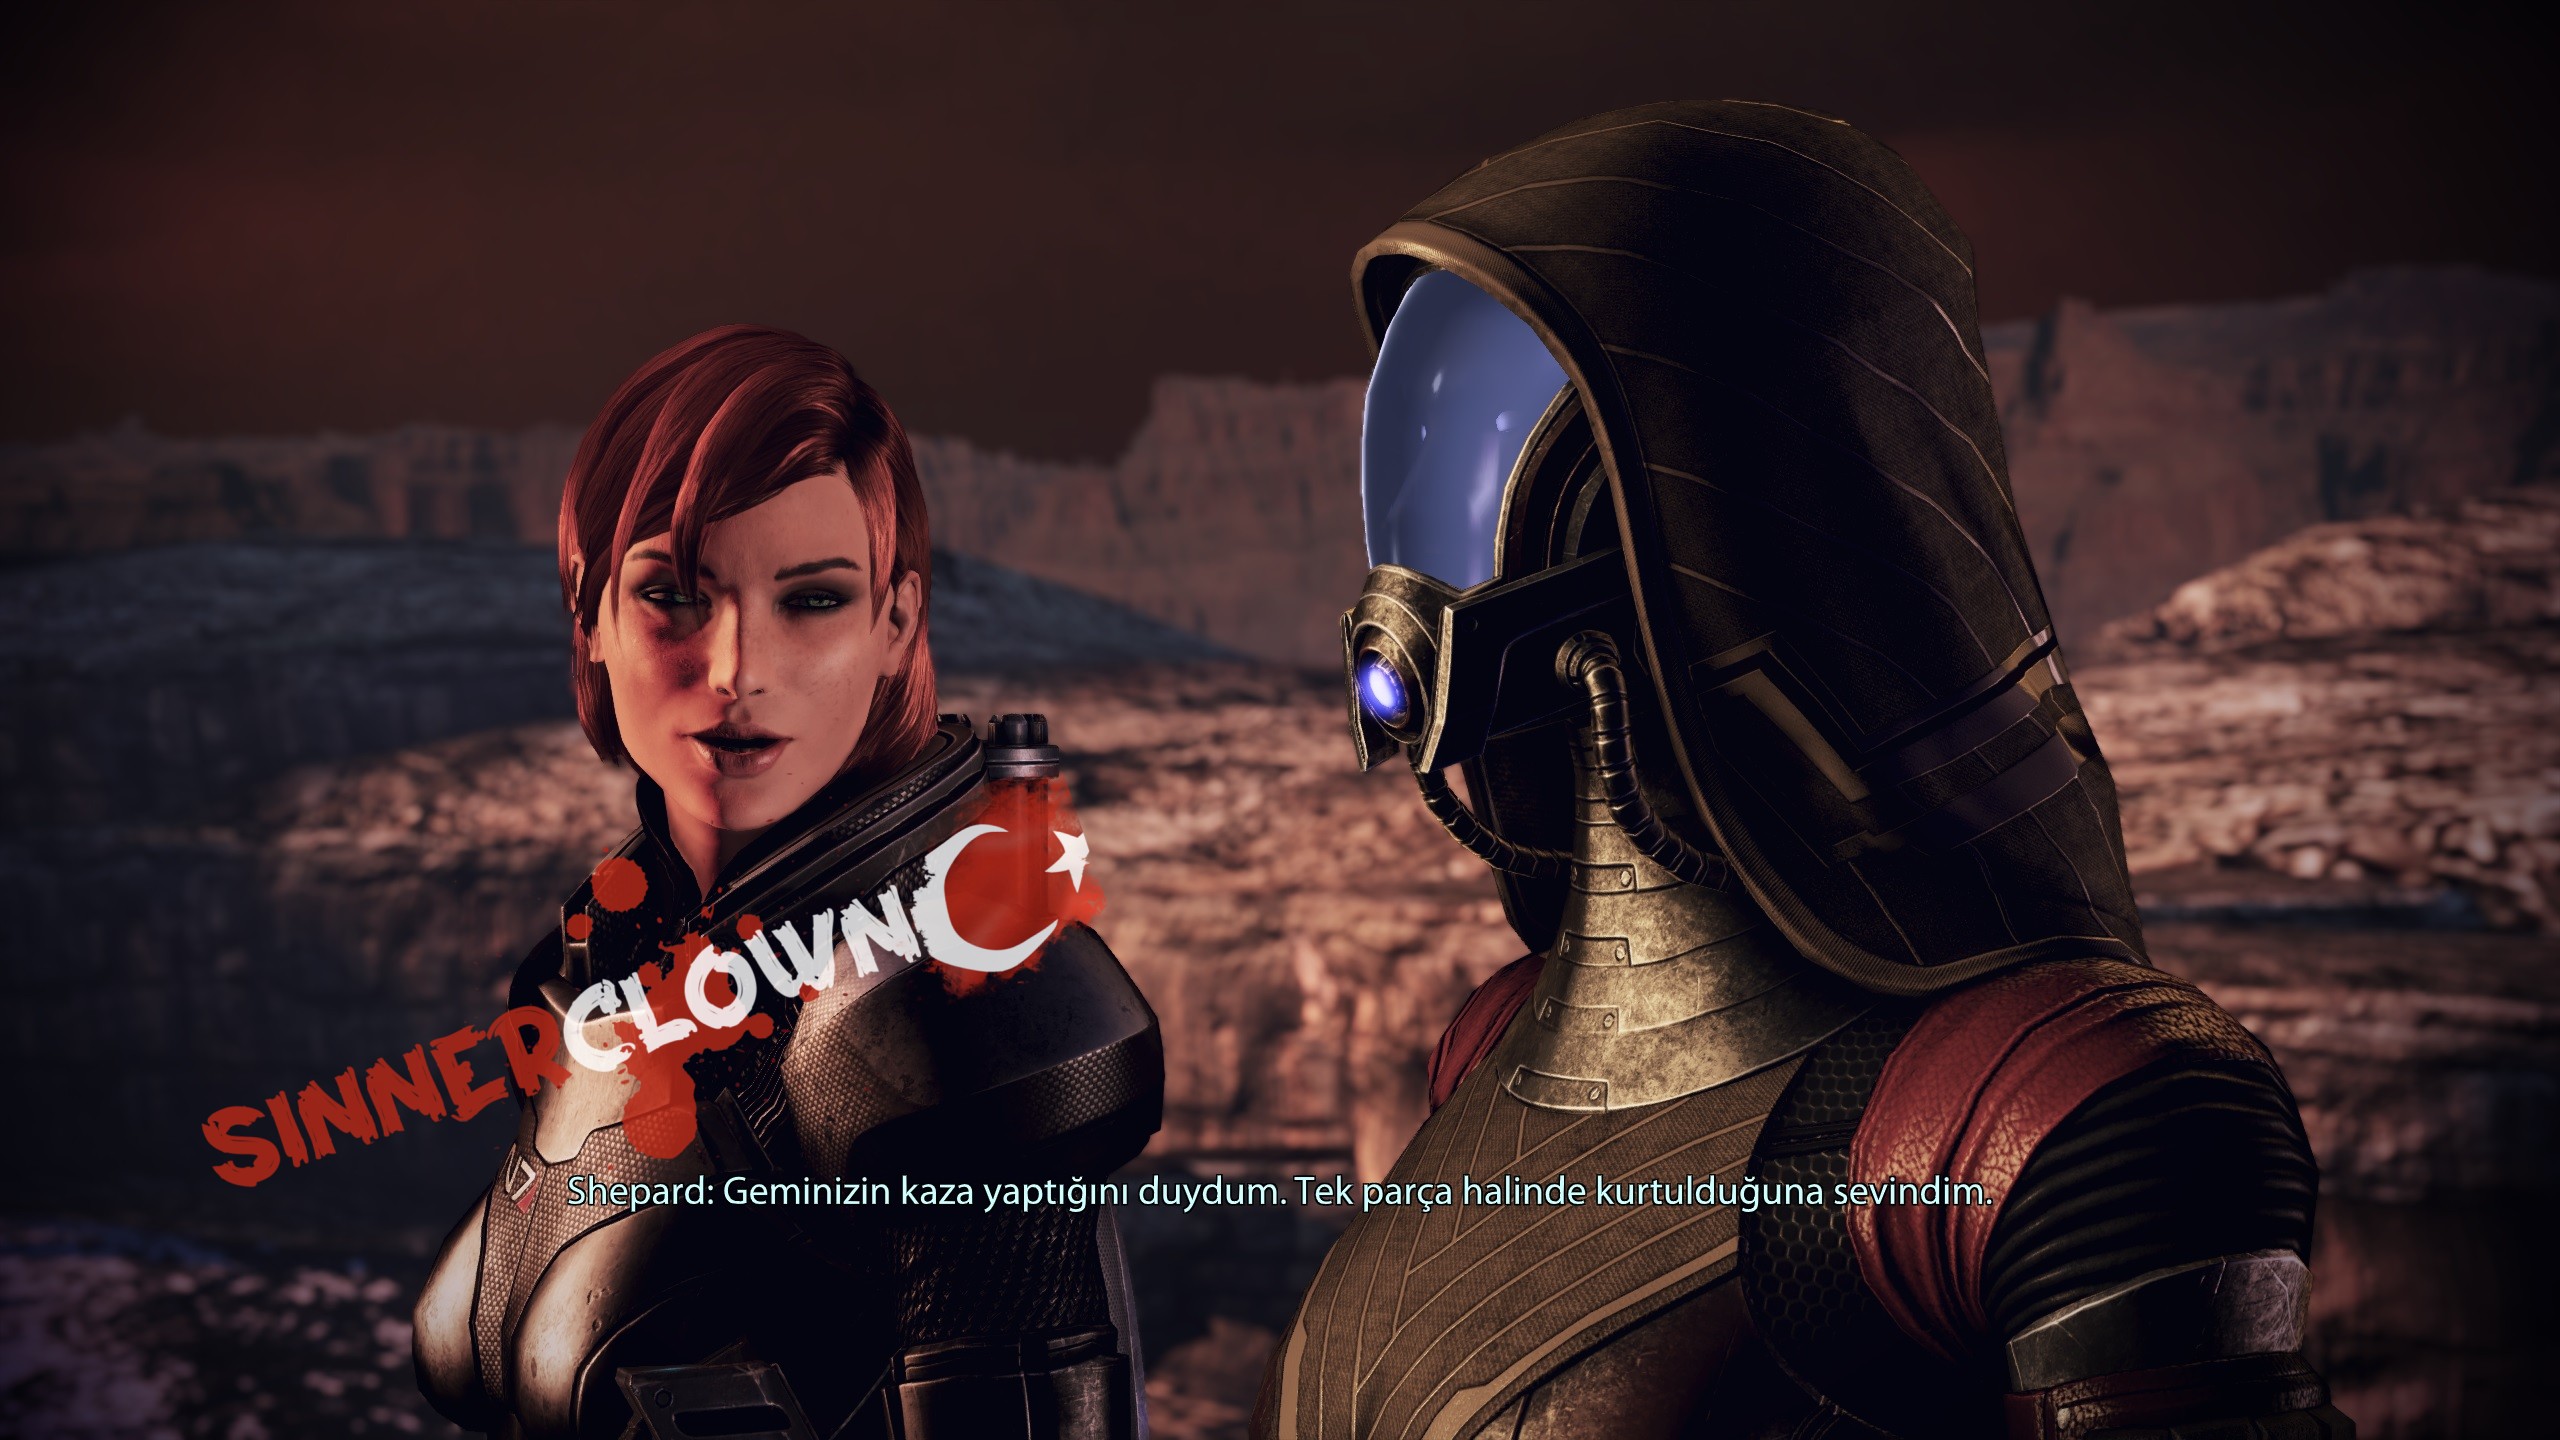 Mass_Effect_3.jpg